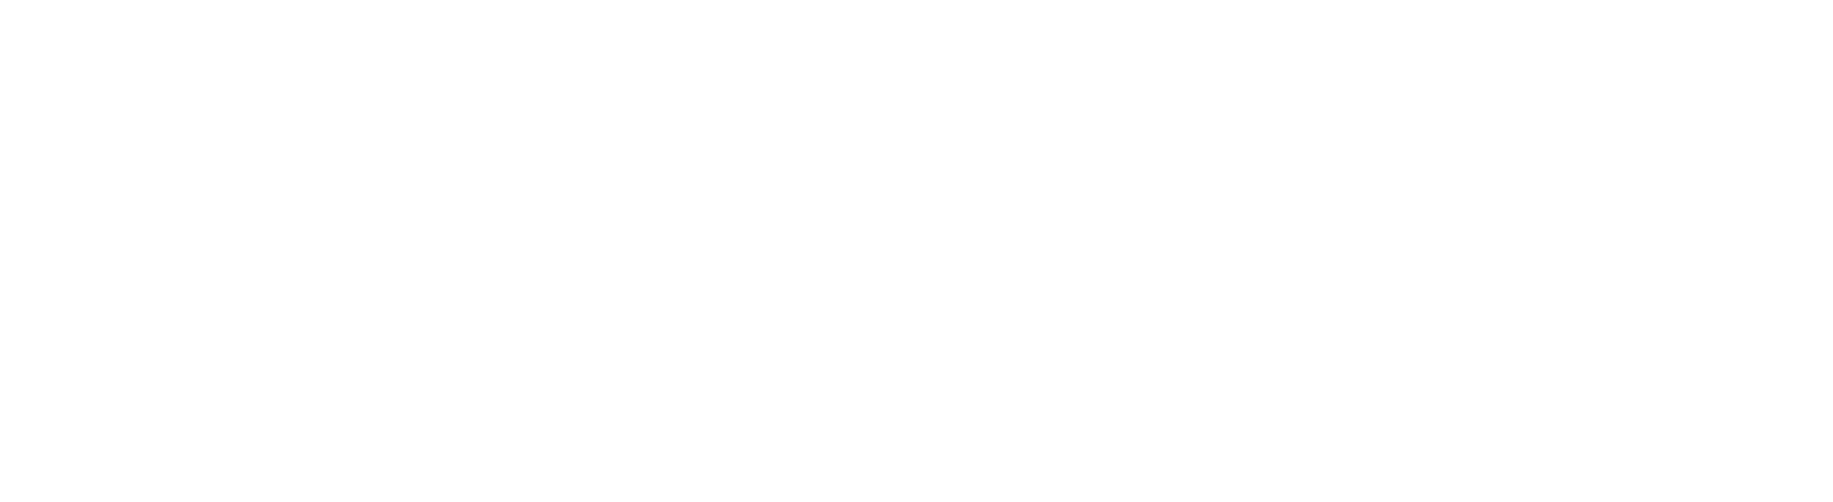 Wenneker.be white logo